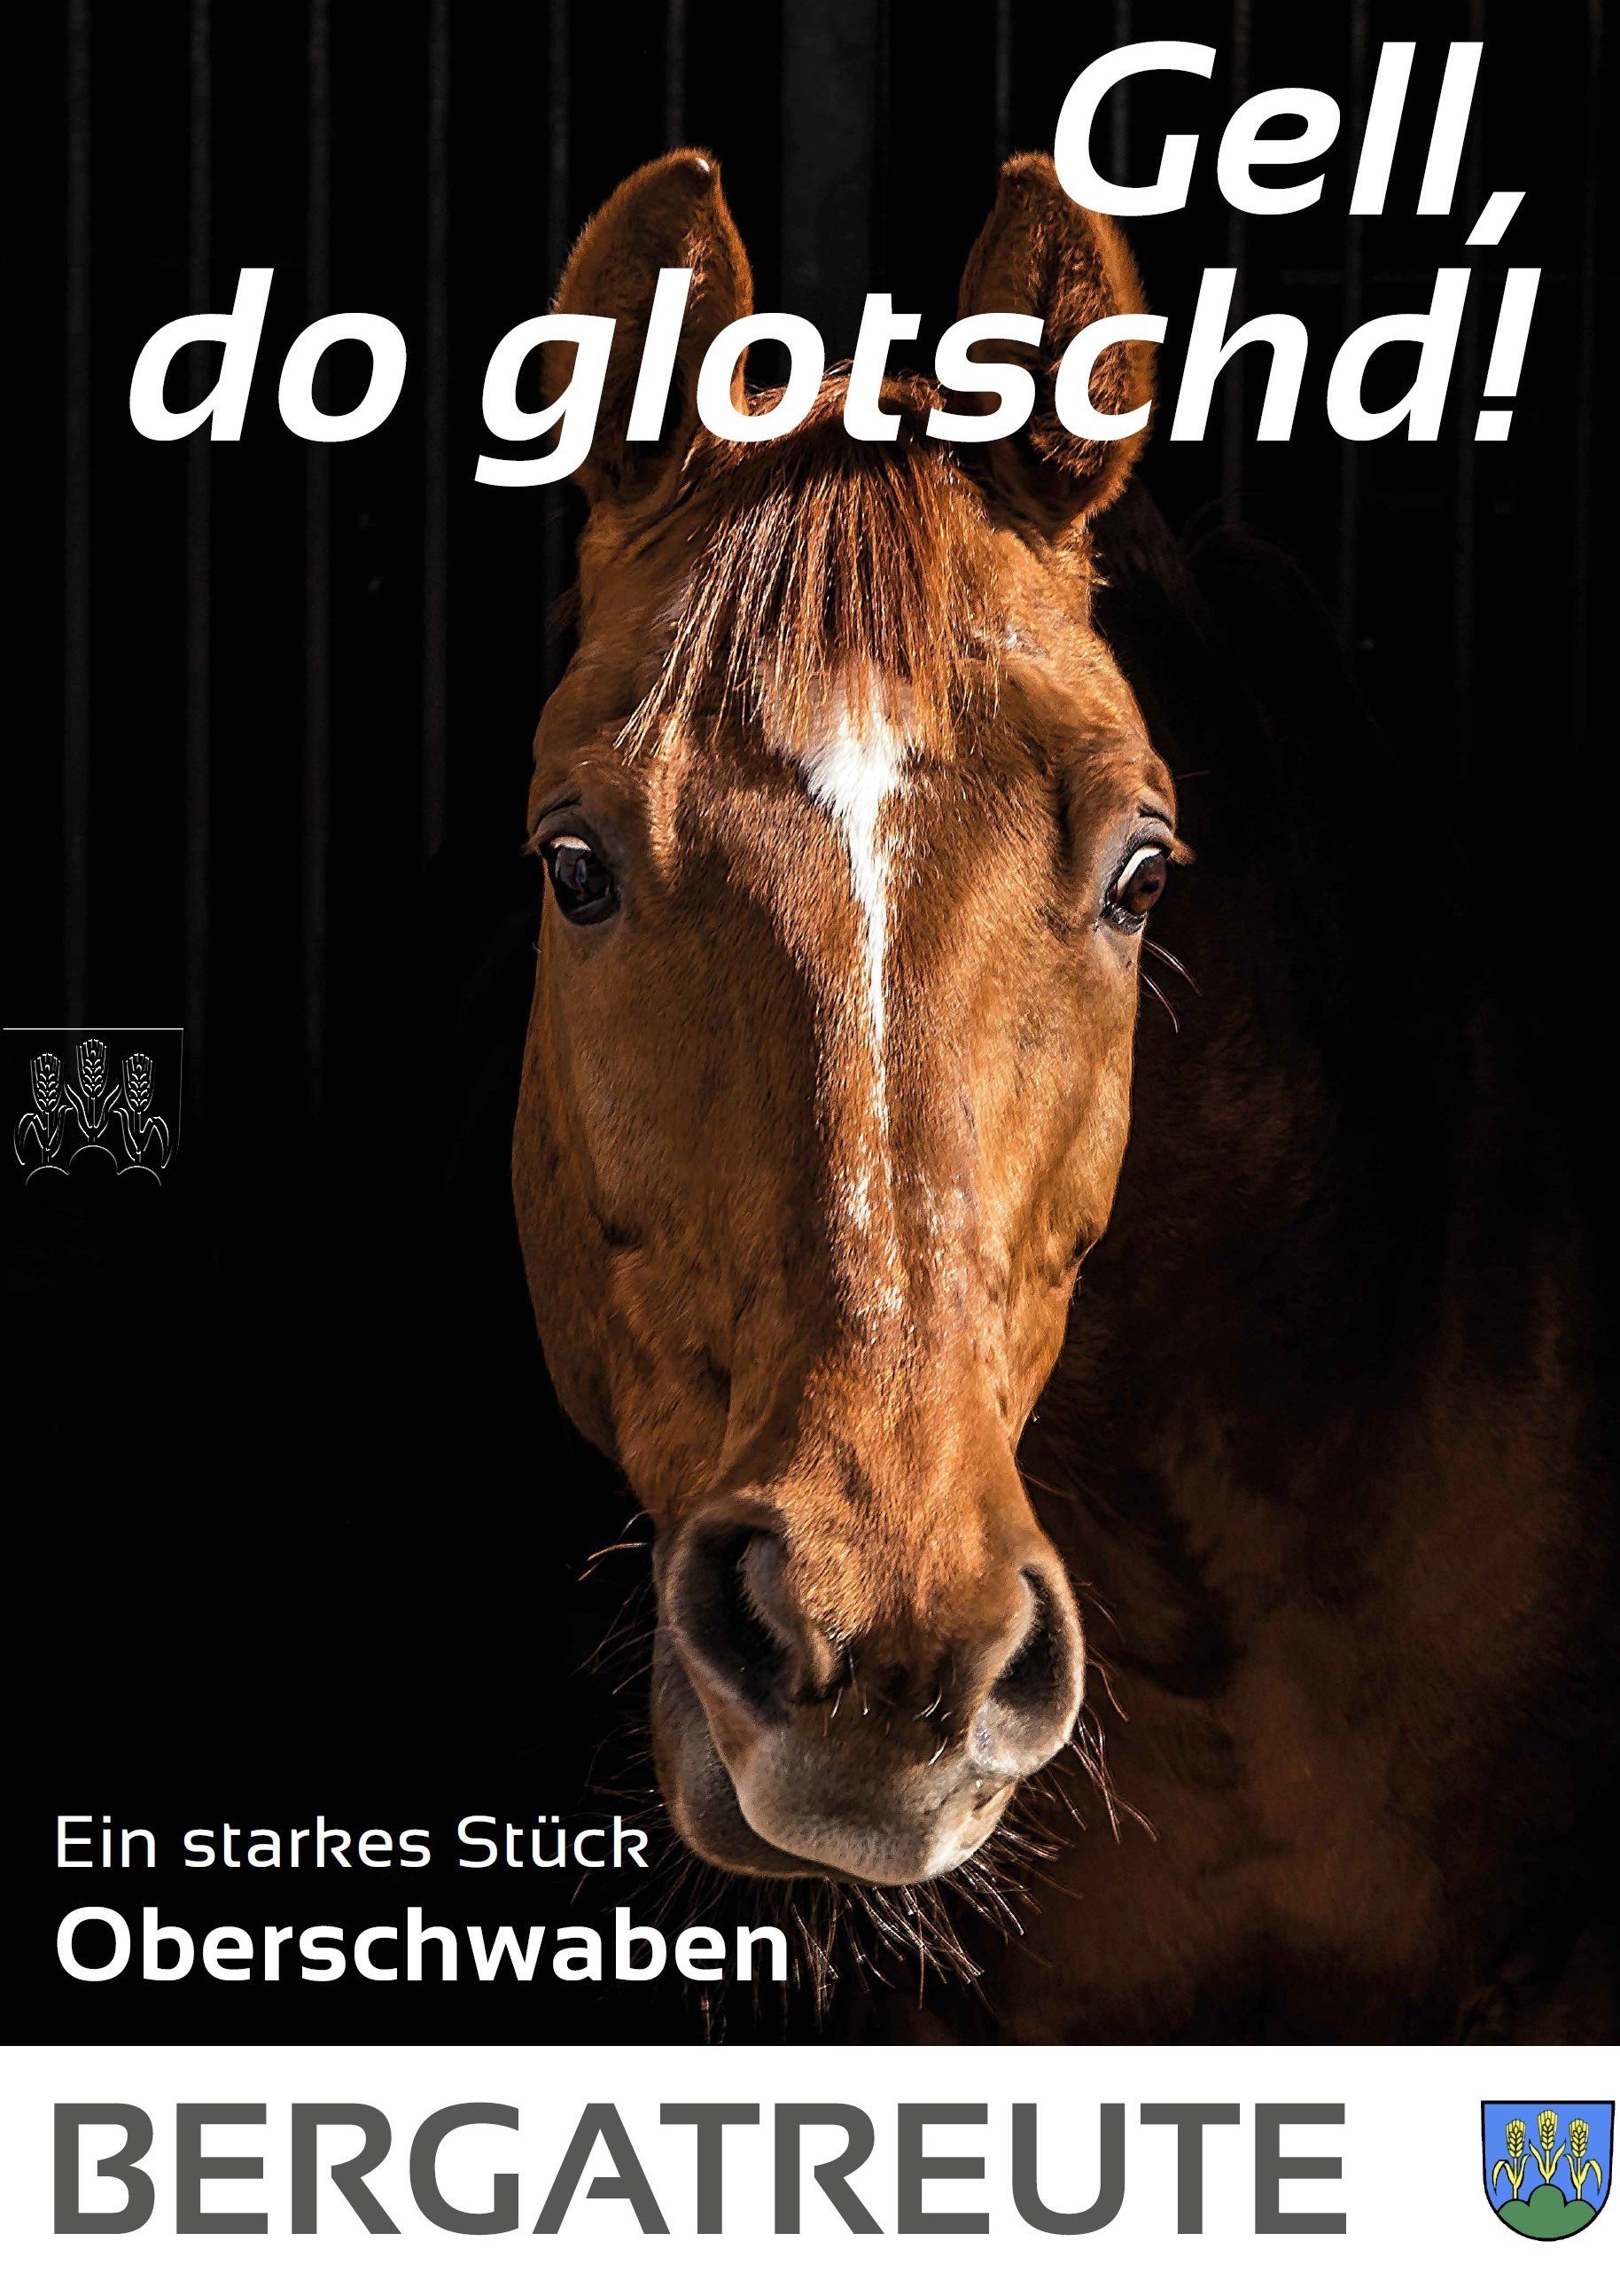  Plakat mit Pferdekopf und Titel: Gell, do glotschd! 